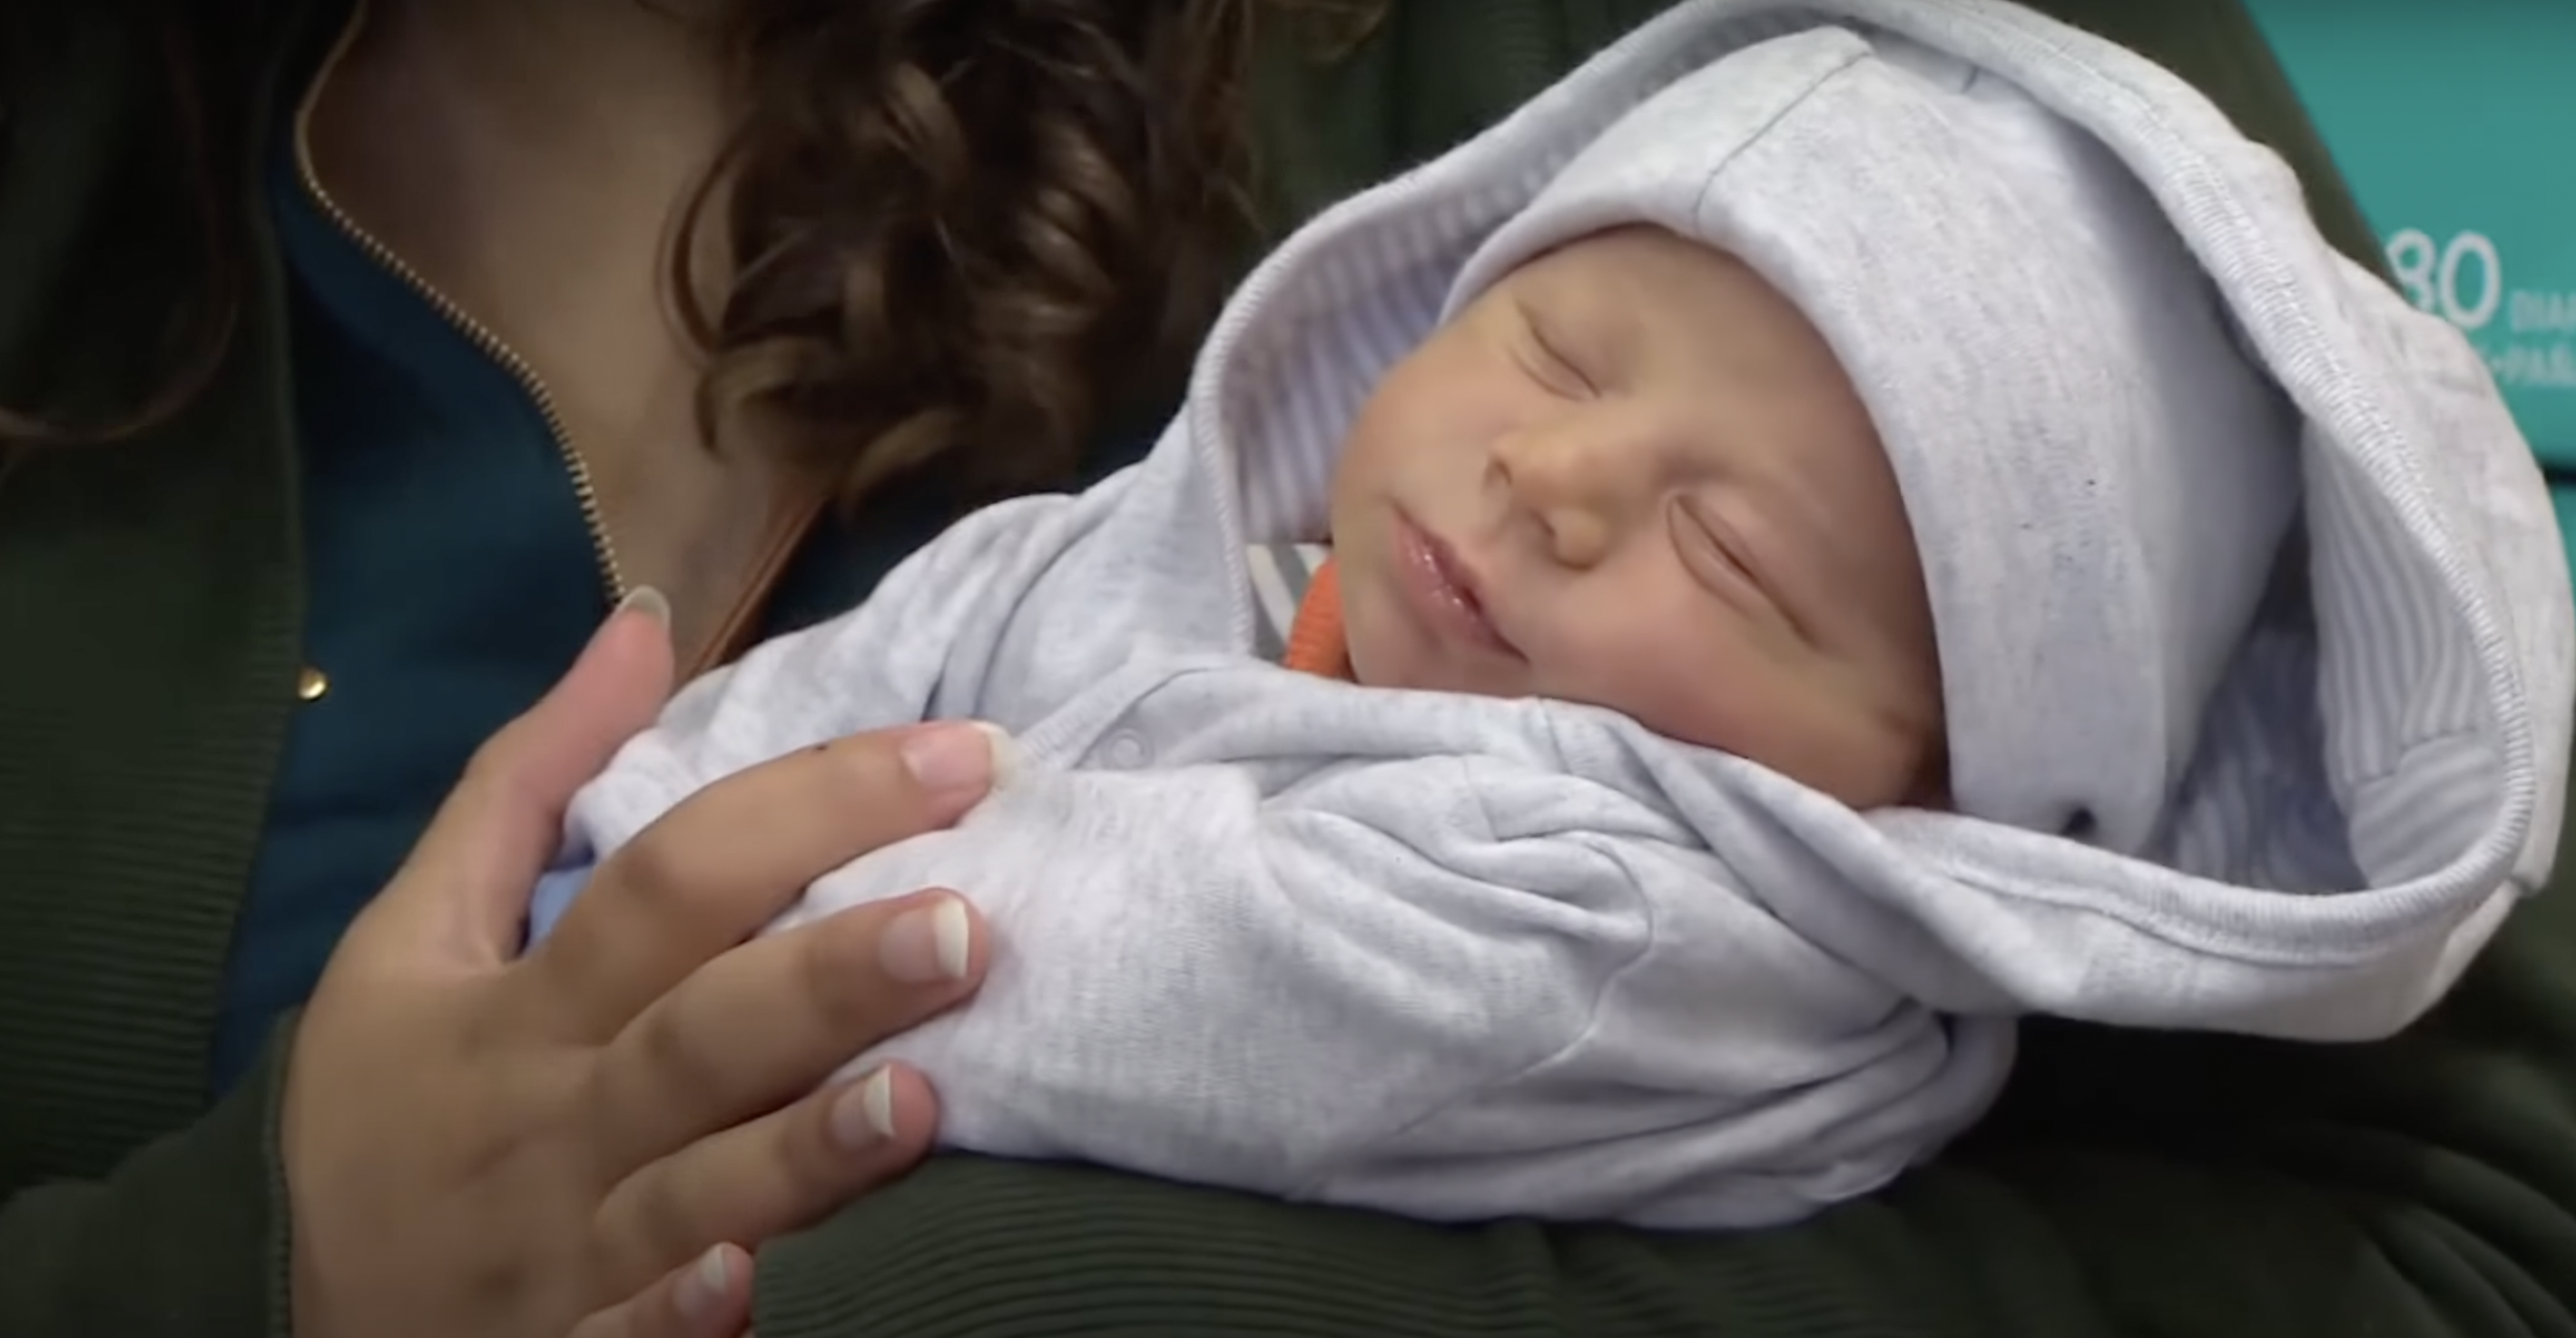 Baby Ezra | Quelle: YouTube.com/CBC Nova Scotia